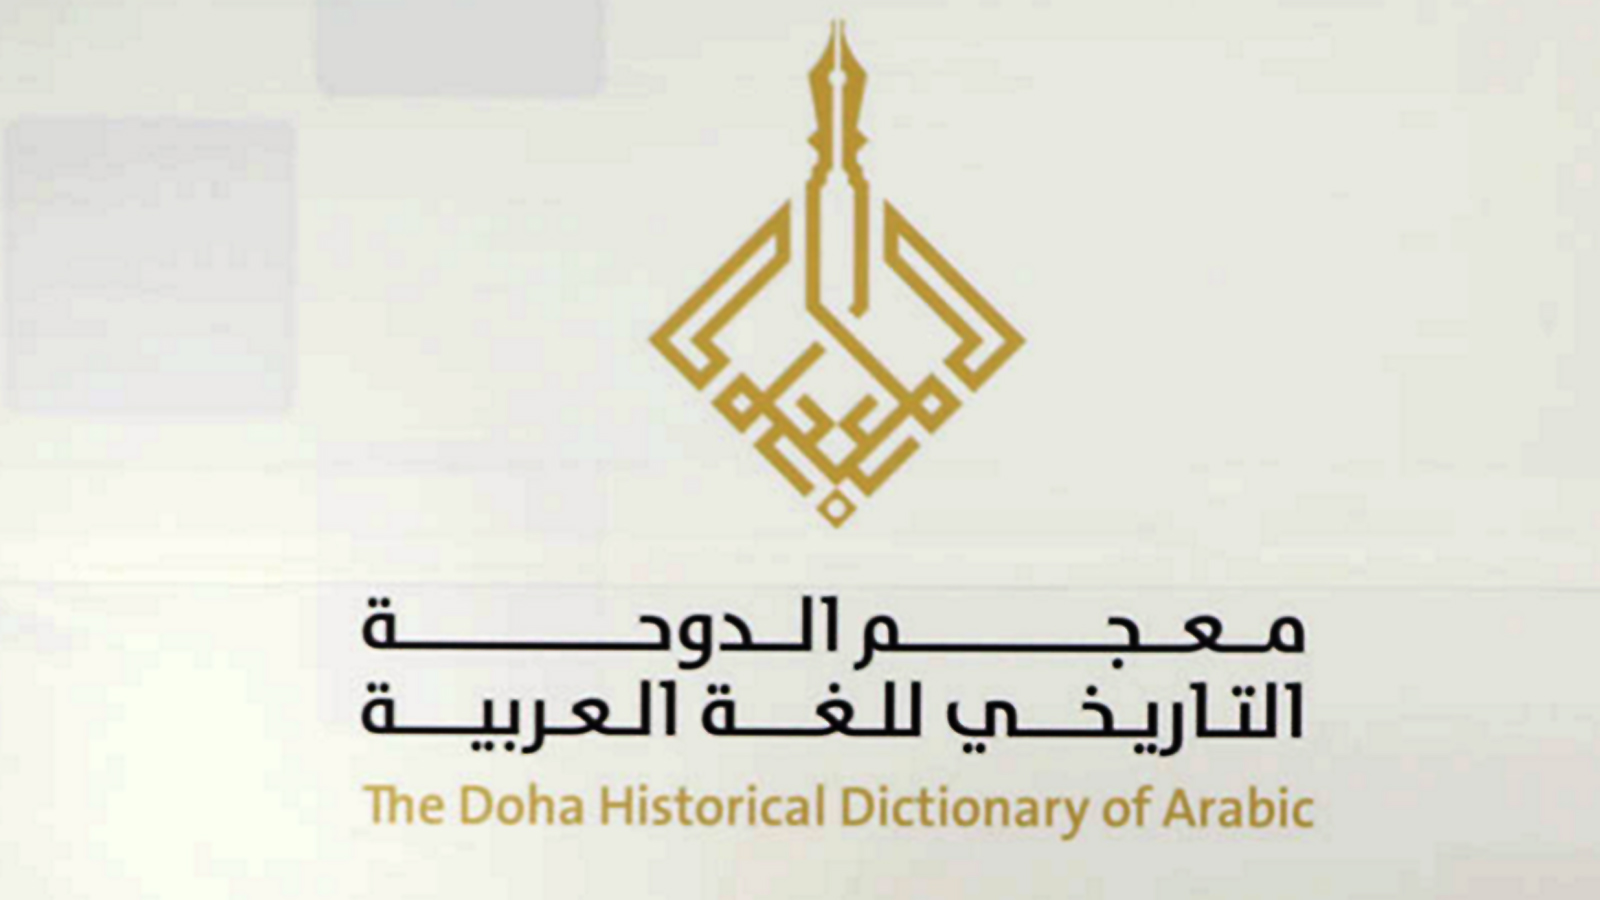 من المتوقع أن يستغرق إنجاز معجم الدوحة التاريخي للغة العربية ما ينيف عن 15 سنة(الجزيرة)